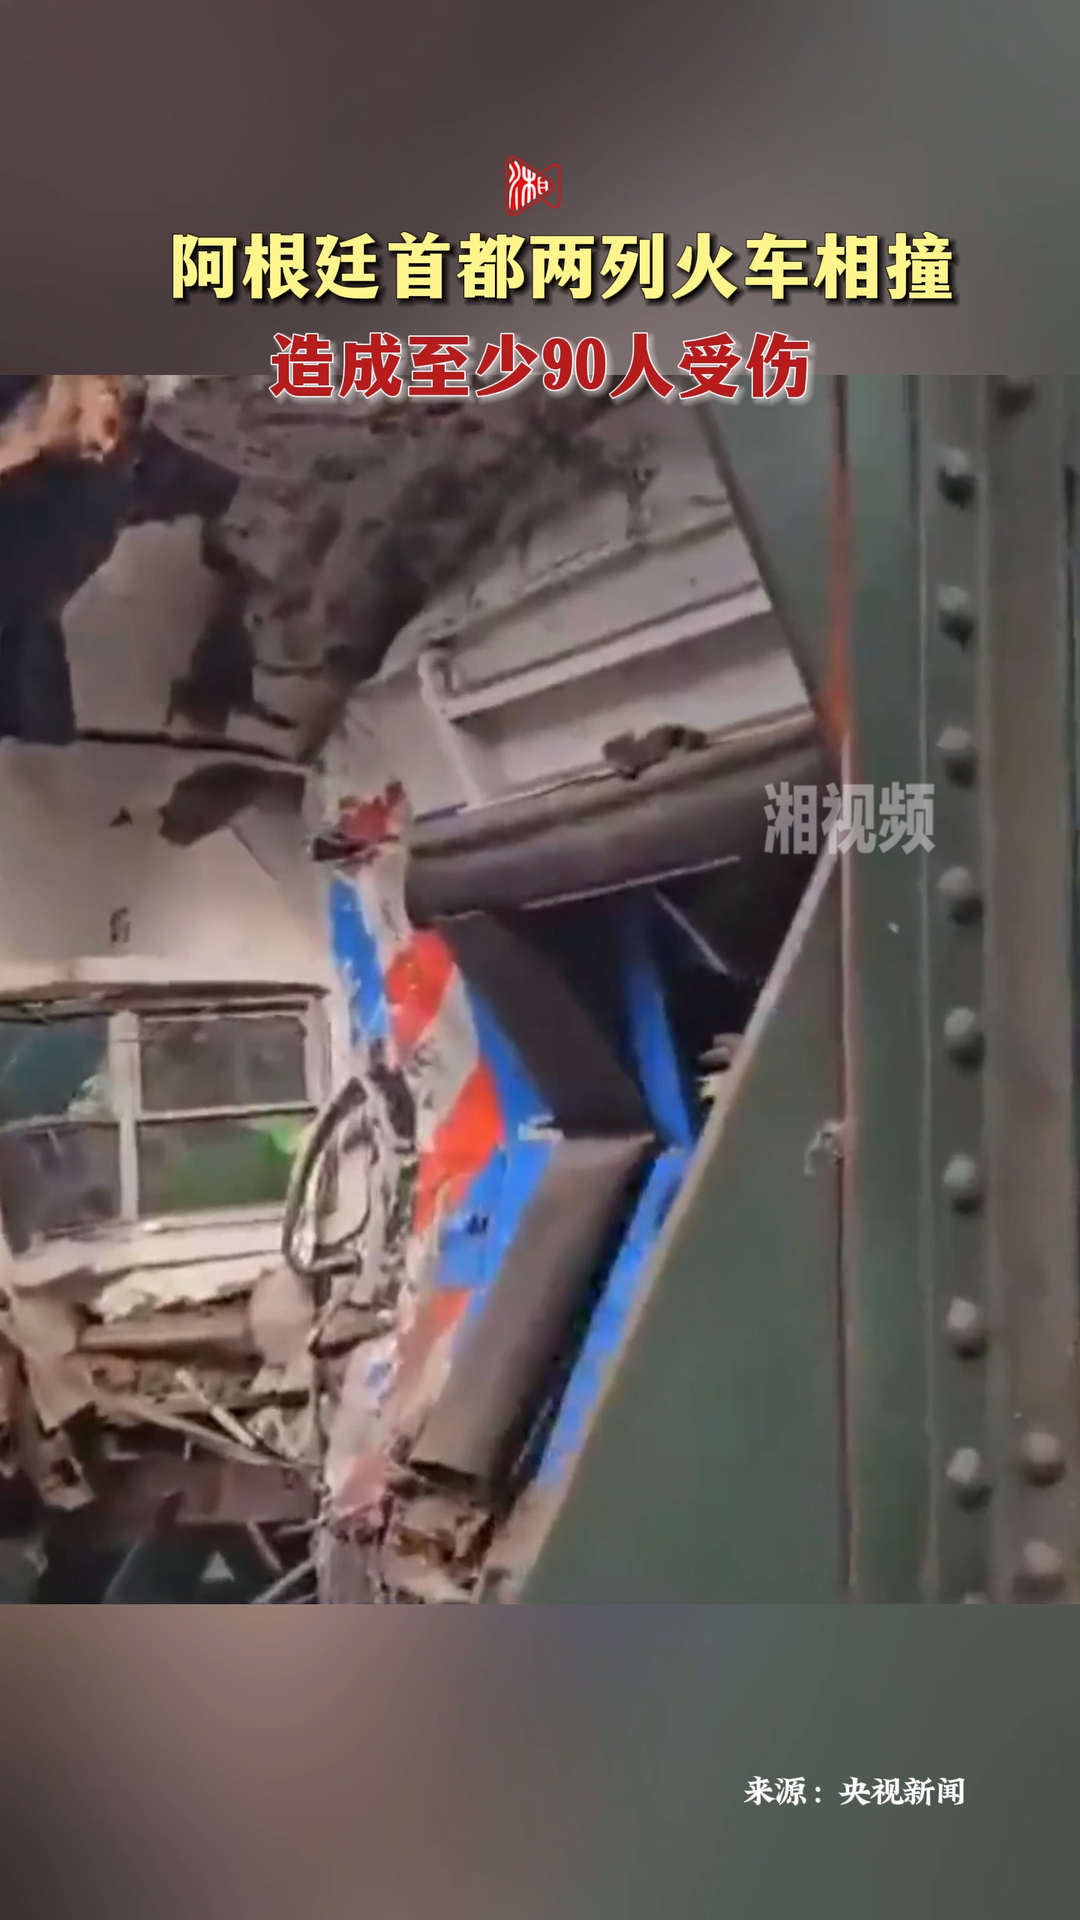 阿根廷首都两列火车相撞 造成至少90人受伤